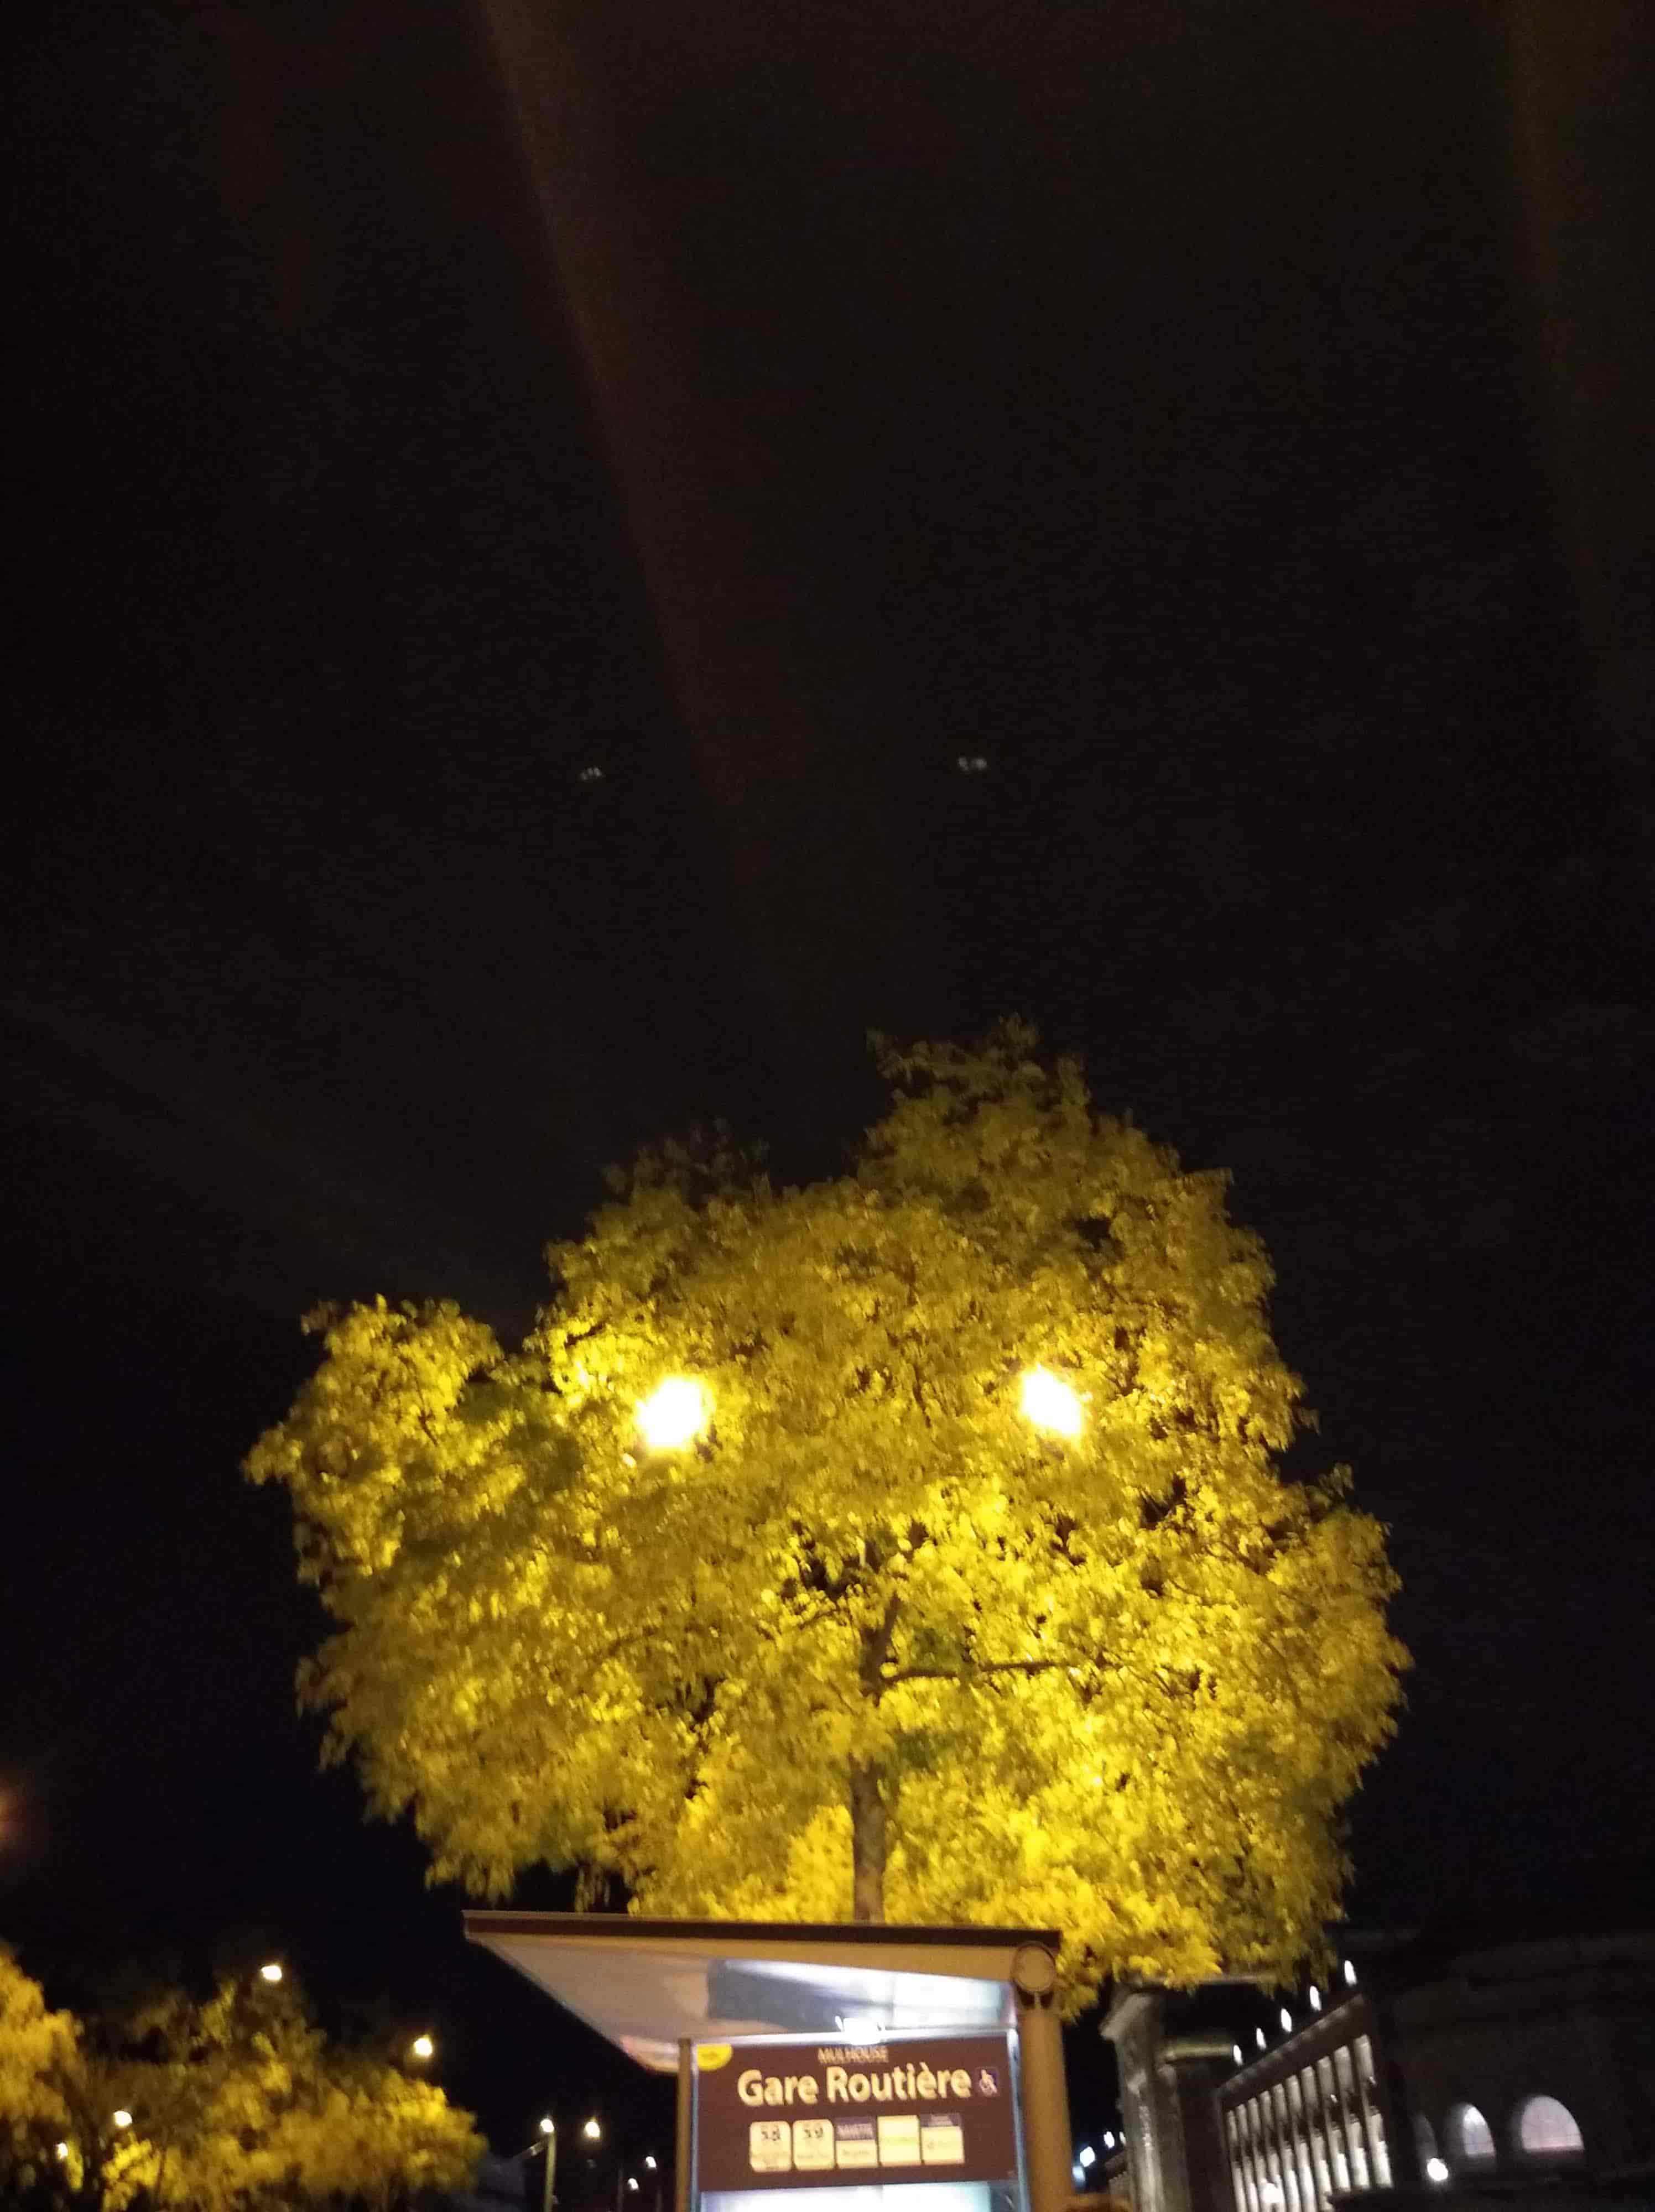 un arbre la nuit, à travers les feuilles on aperçoit deux lumières de lampadaire (on dirait des yeux pour l'arbre ?)